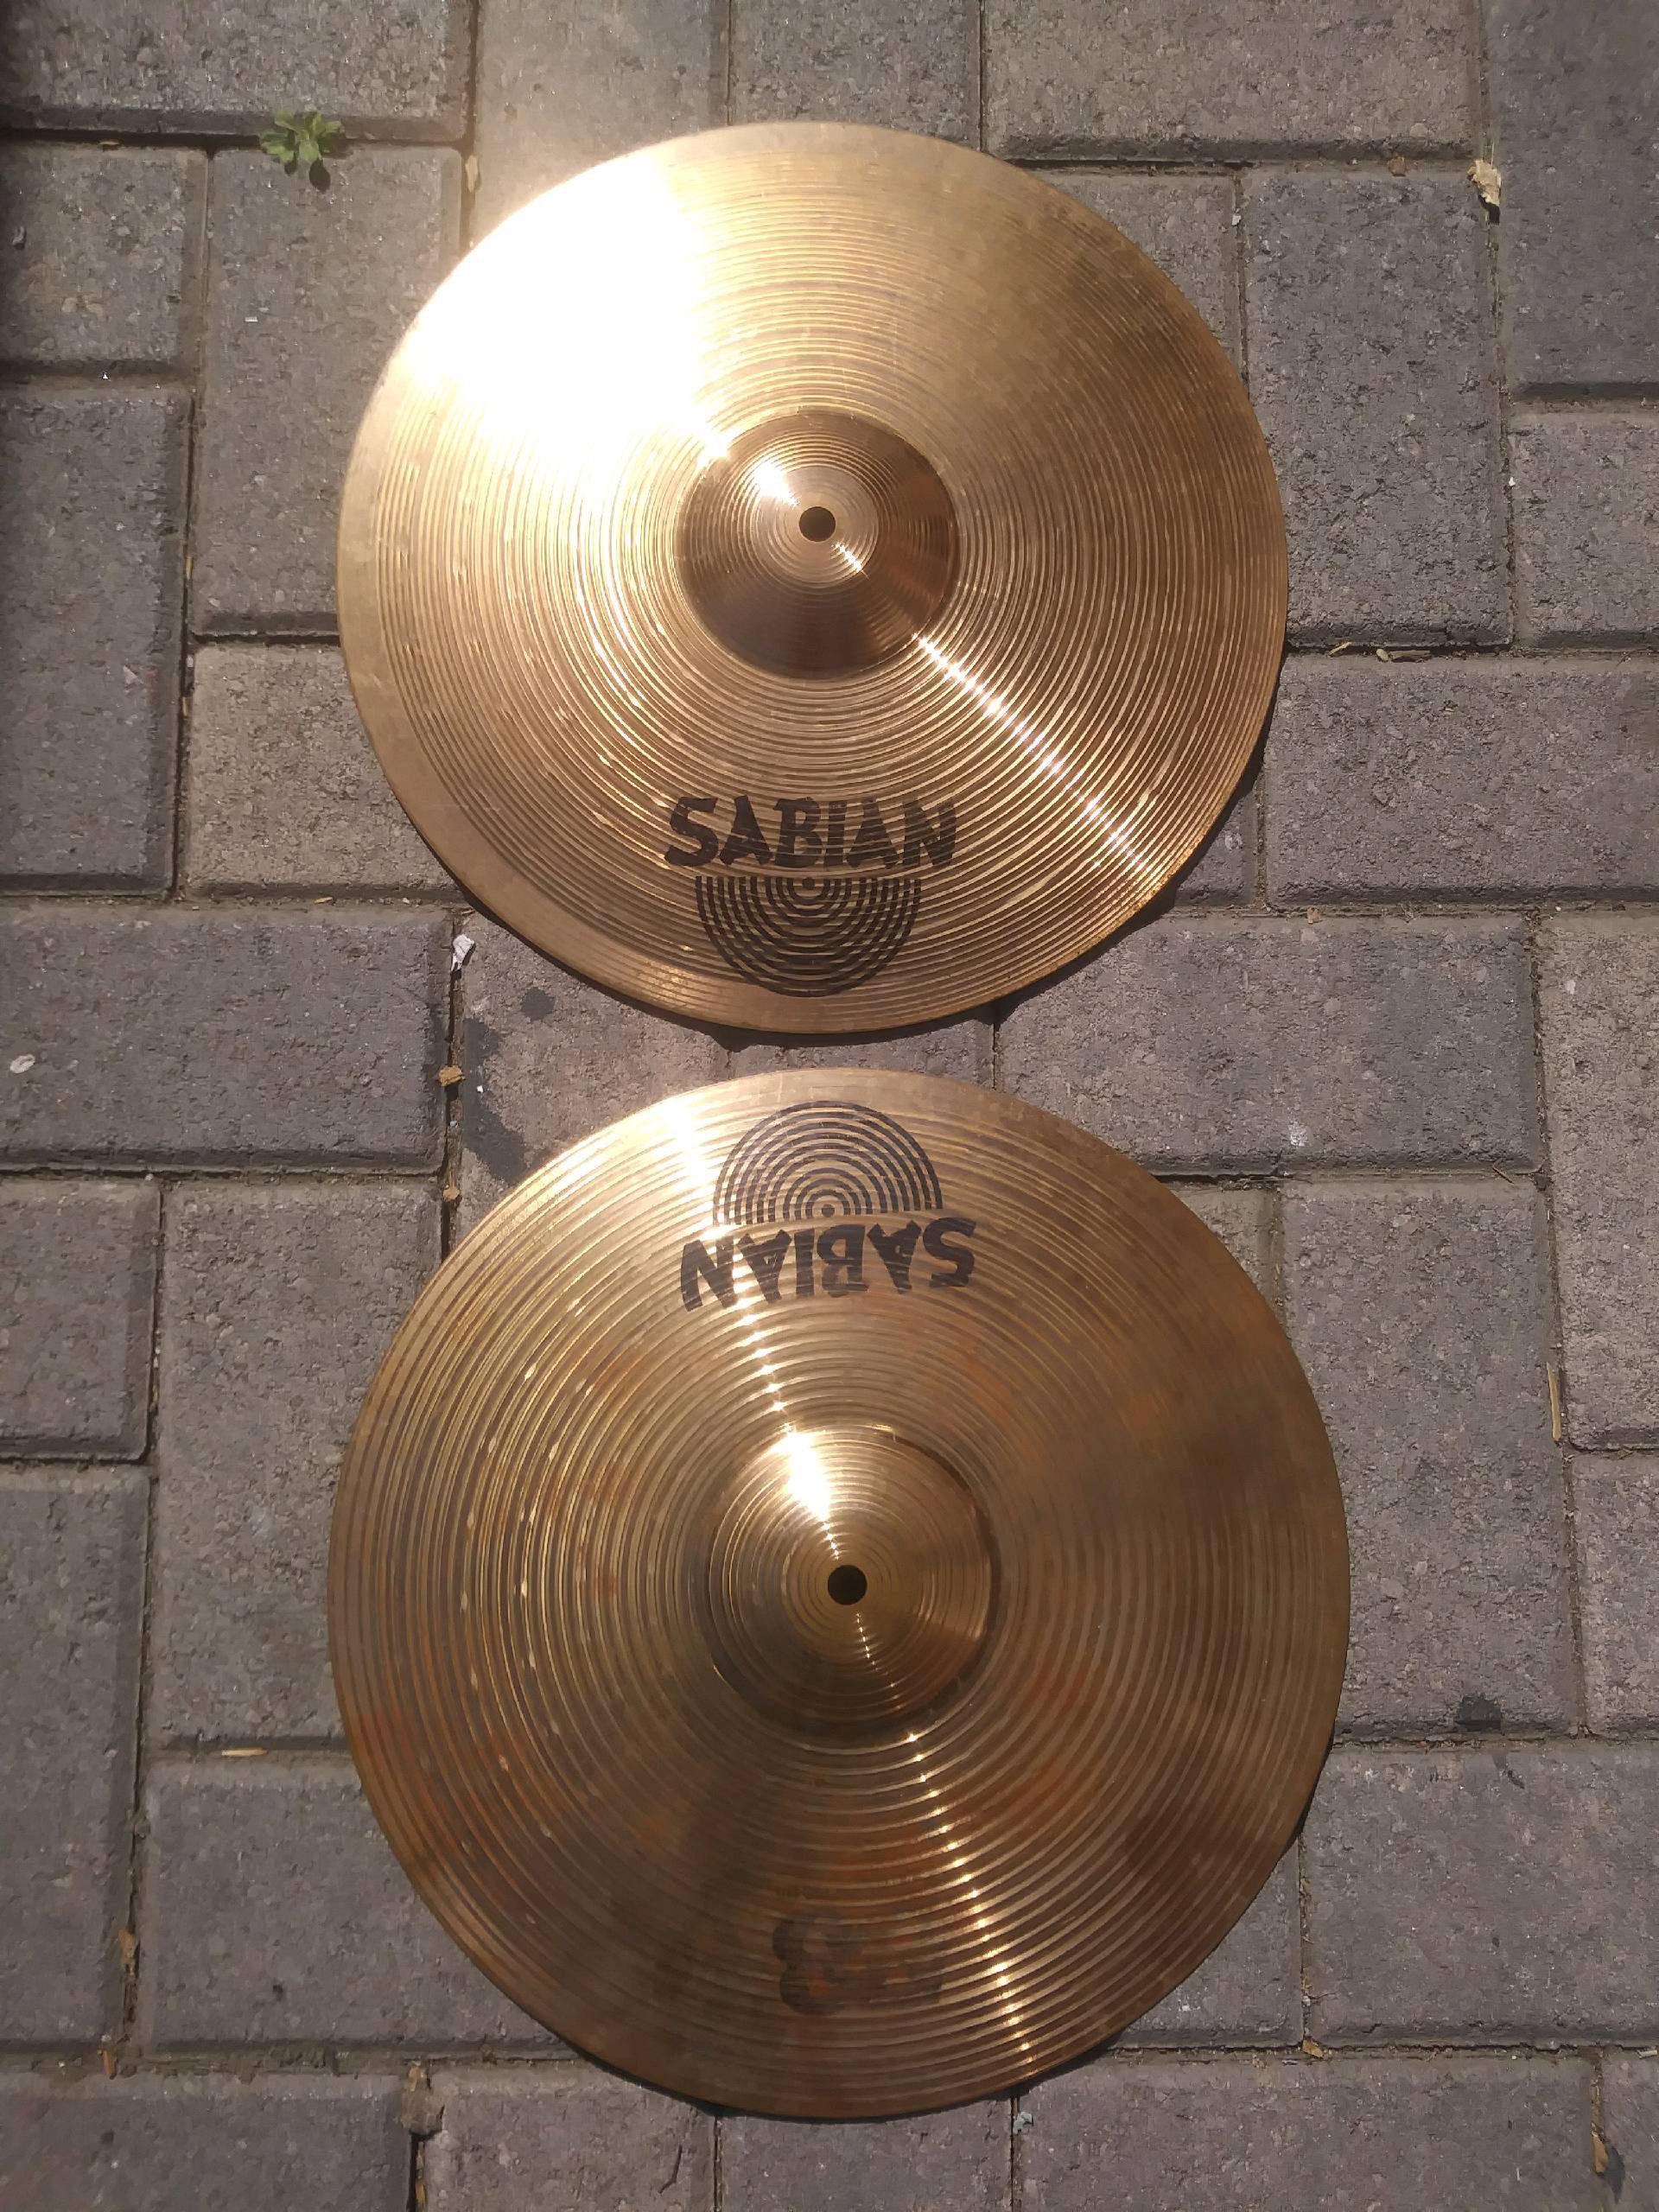 SABIAN Hihats B8 cymbals 14" Pair top & bottom